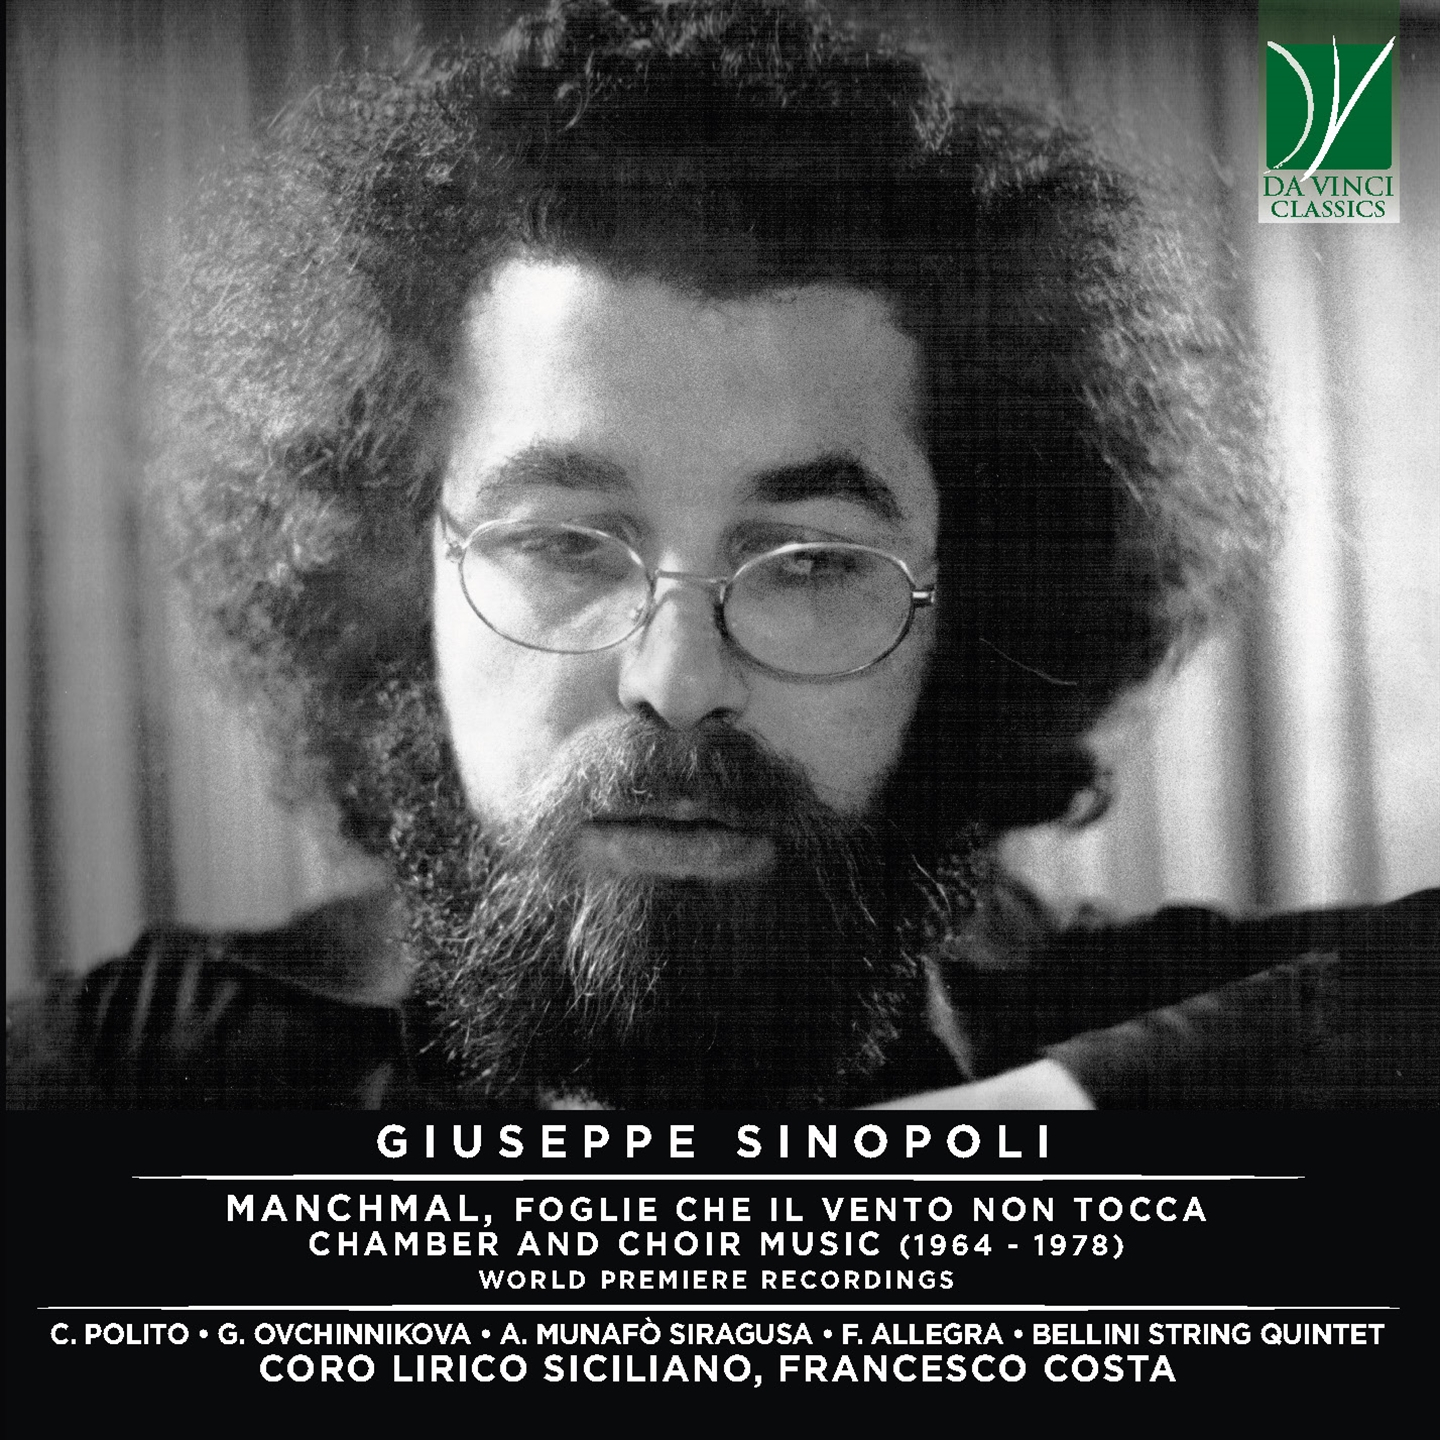 SINOPOLI MANCHMAL, FOGLIE CHE IL VENTO NON TOCCA, CHAMBER AND CHOIR MUSIC (1964